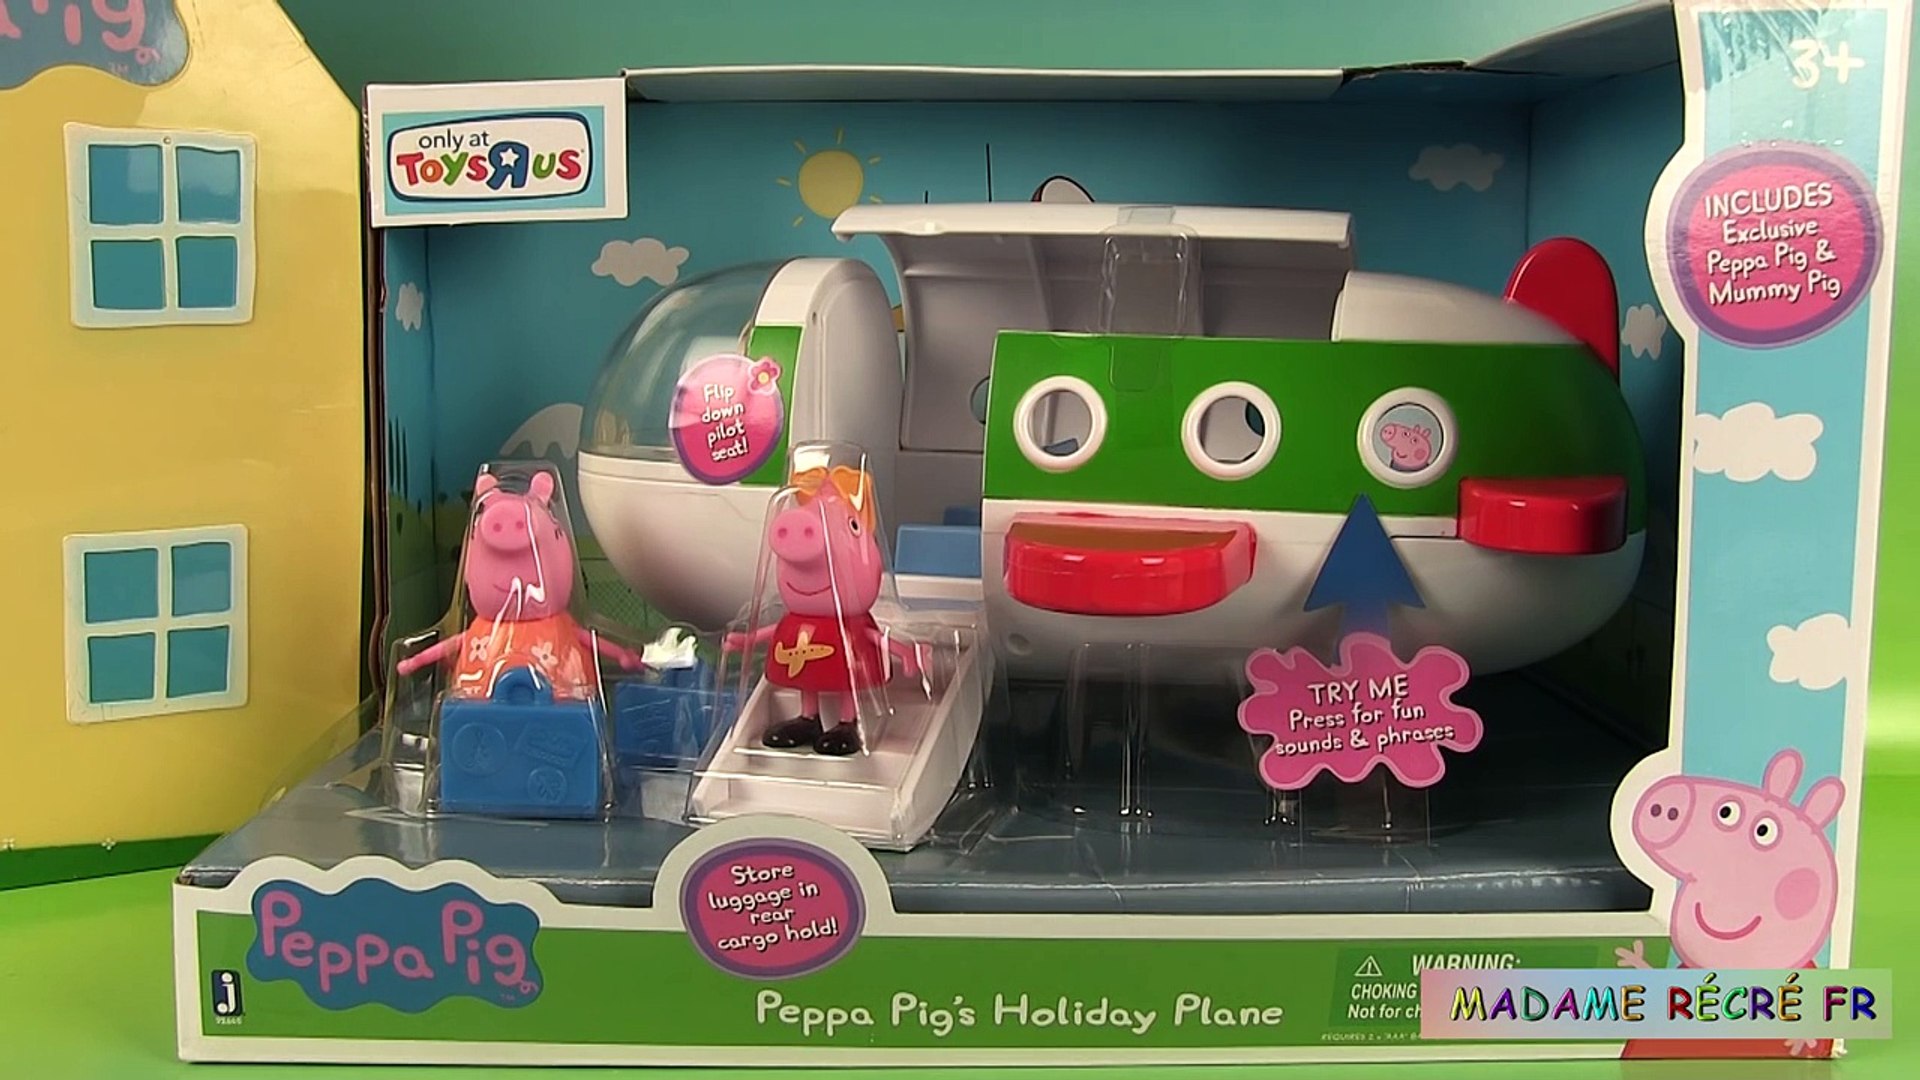 Peppa pig jouets